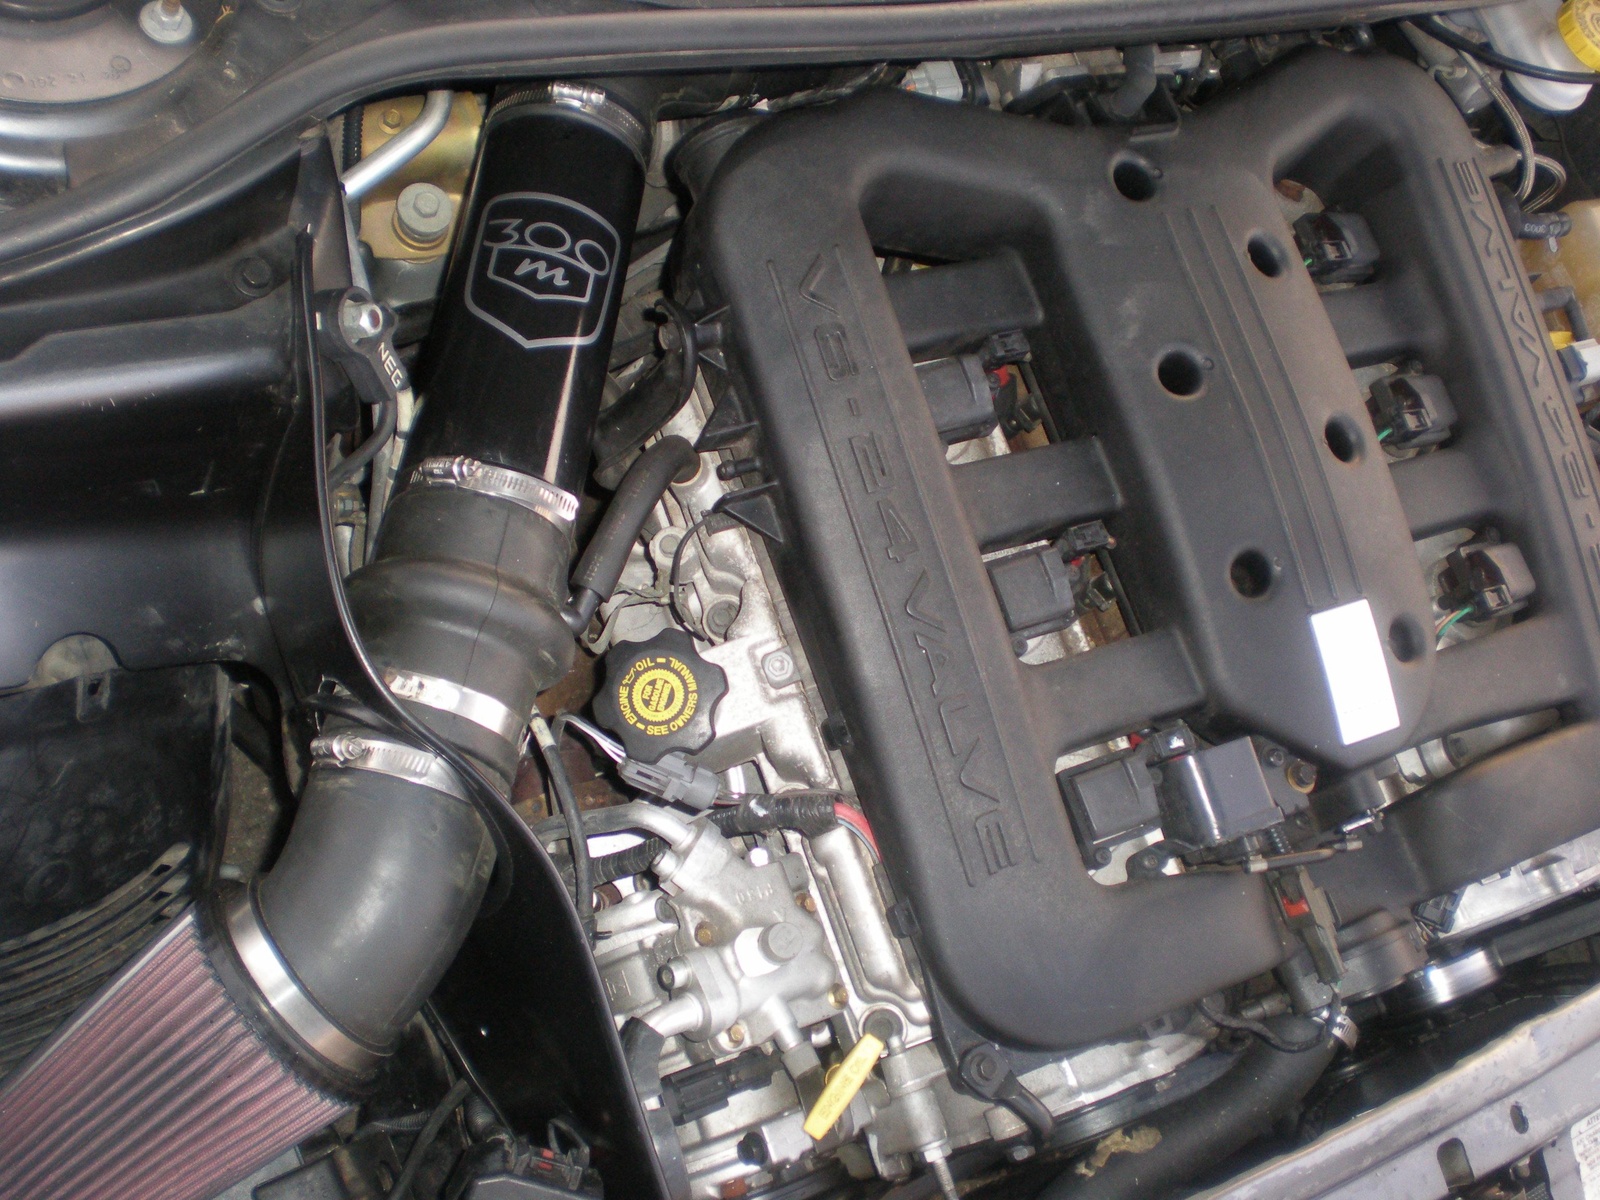 Chrysler 300m cold air intake #1